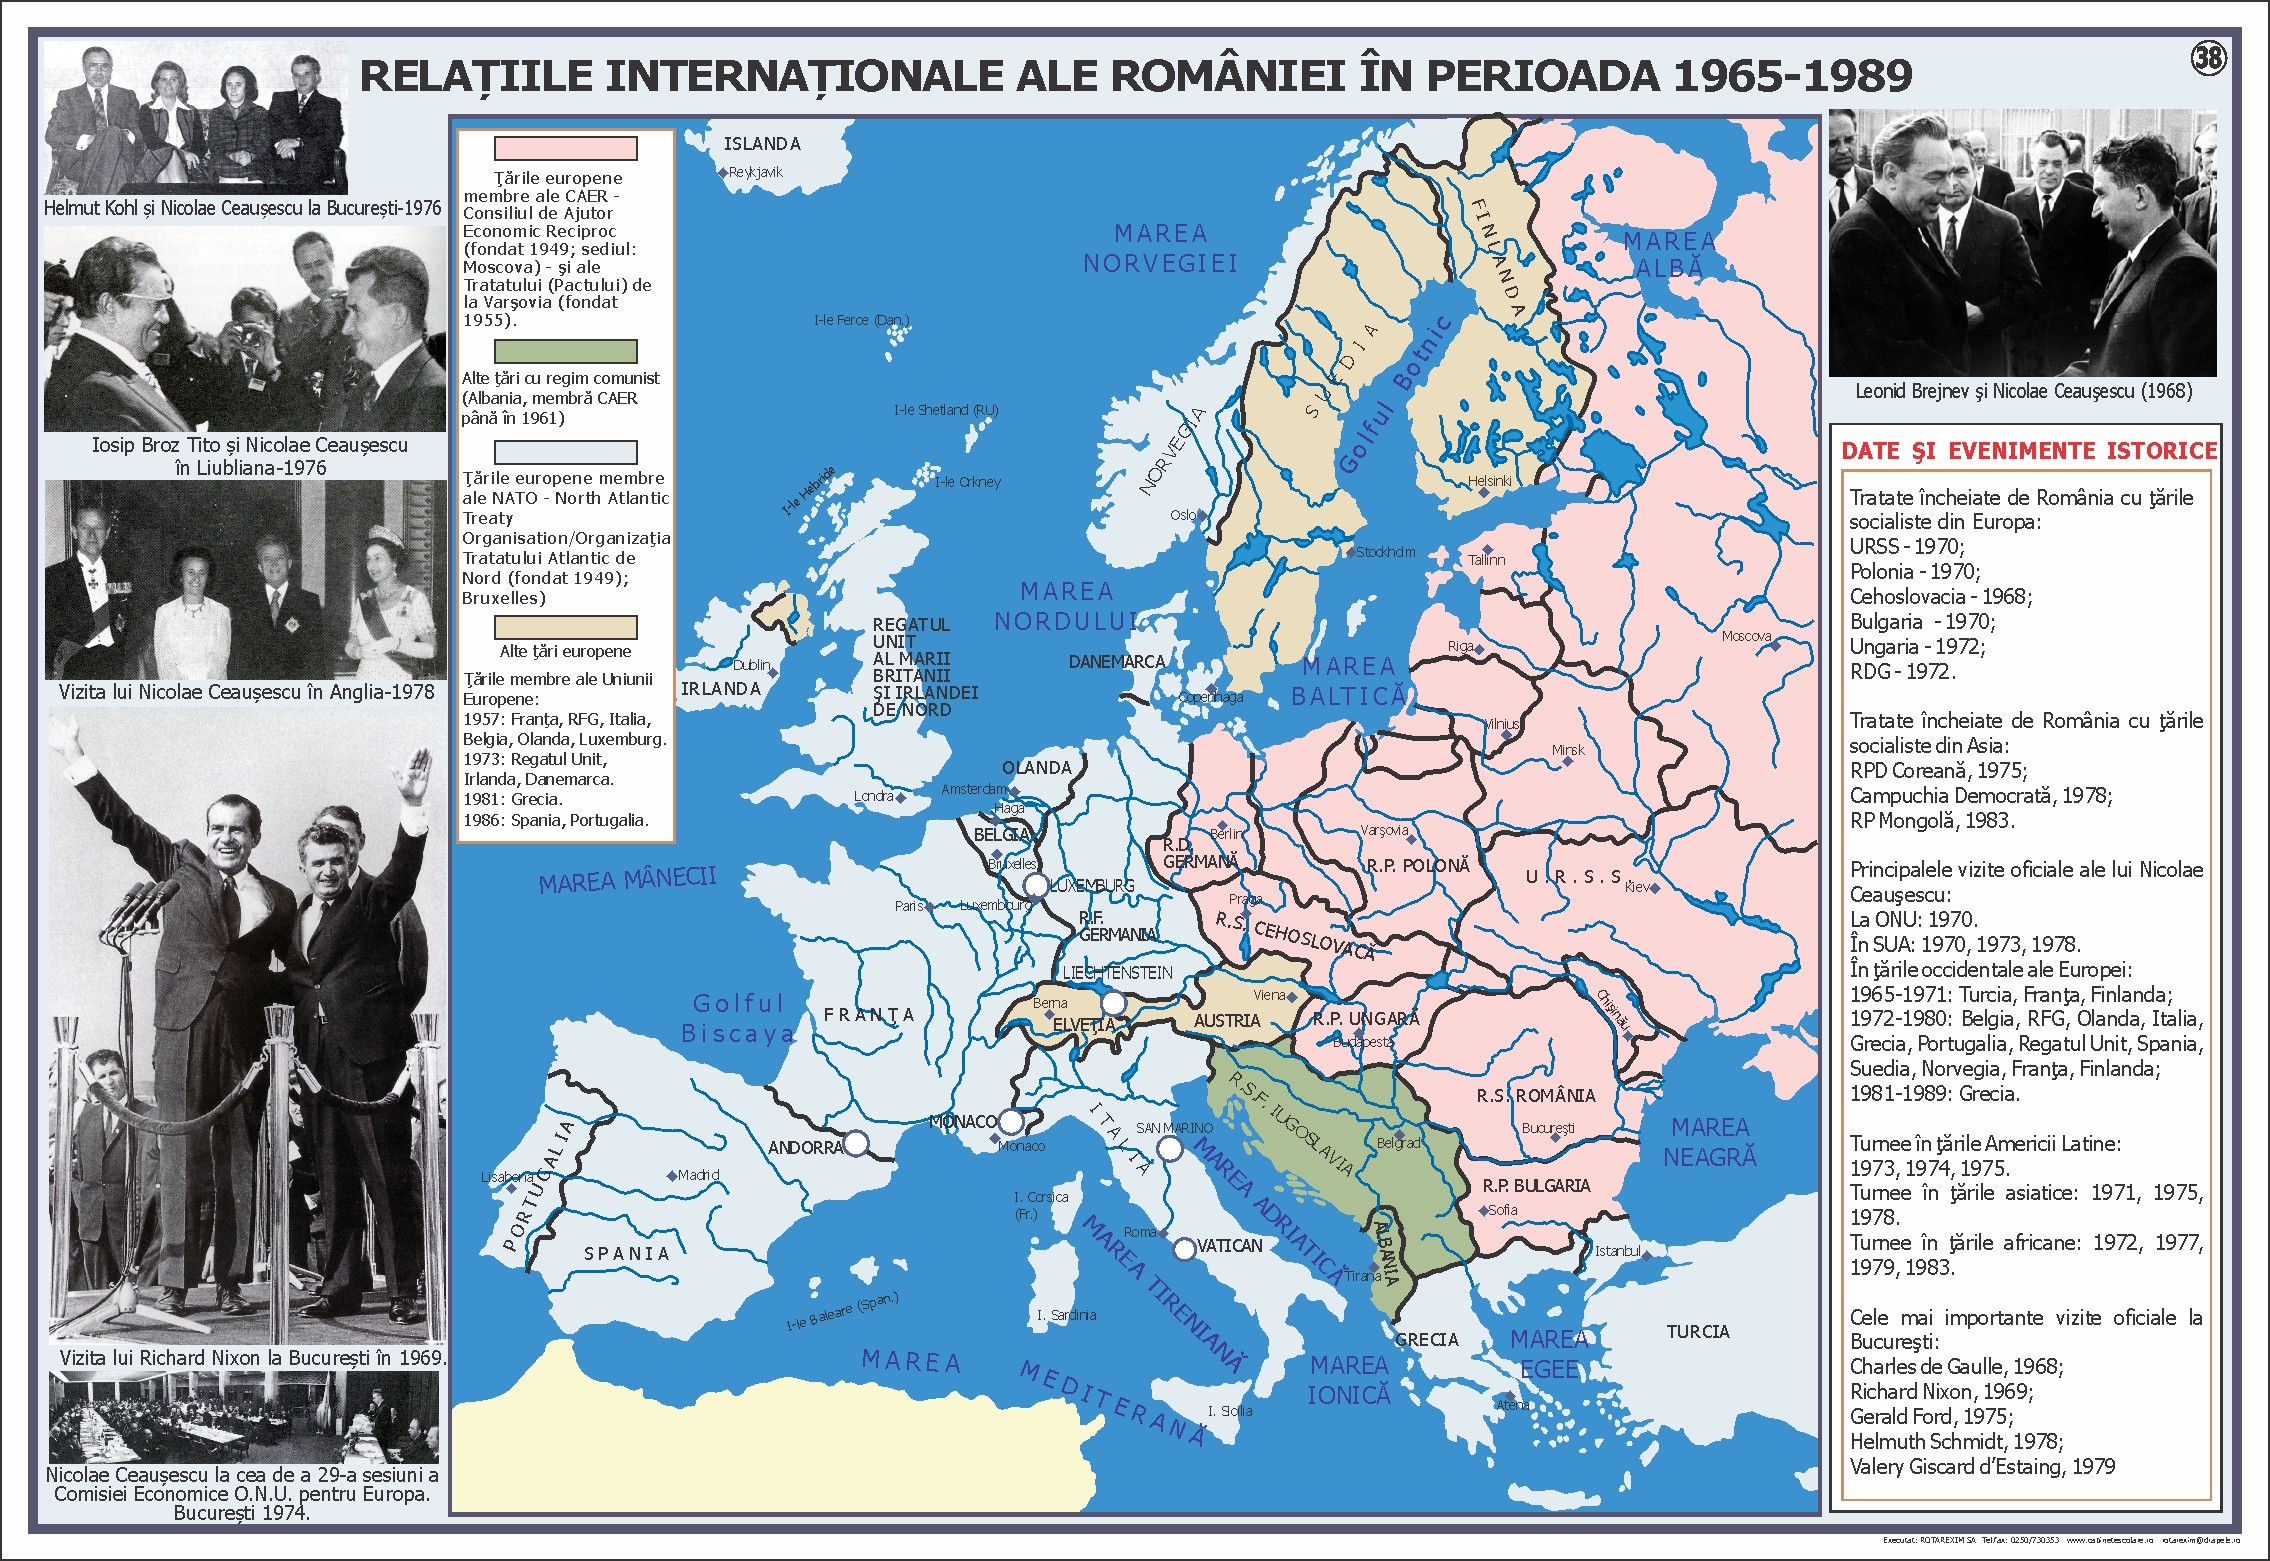 Relațiile internaționale ale României în perioada 1965-1989